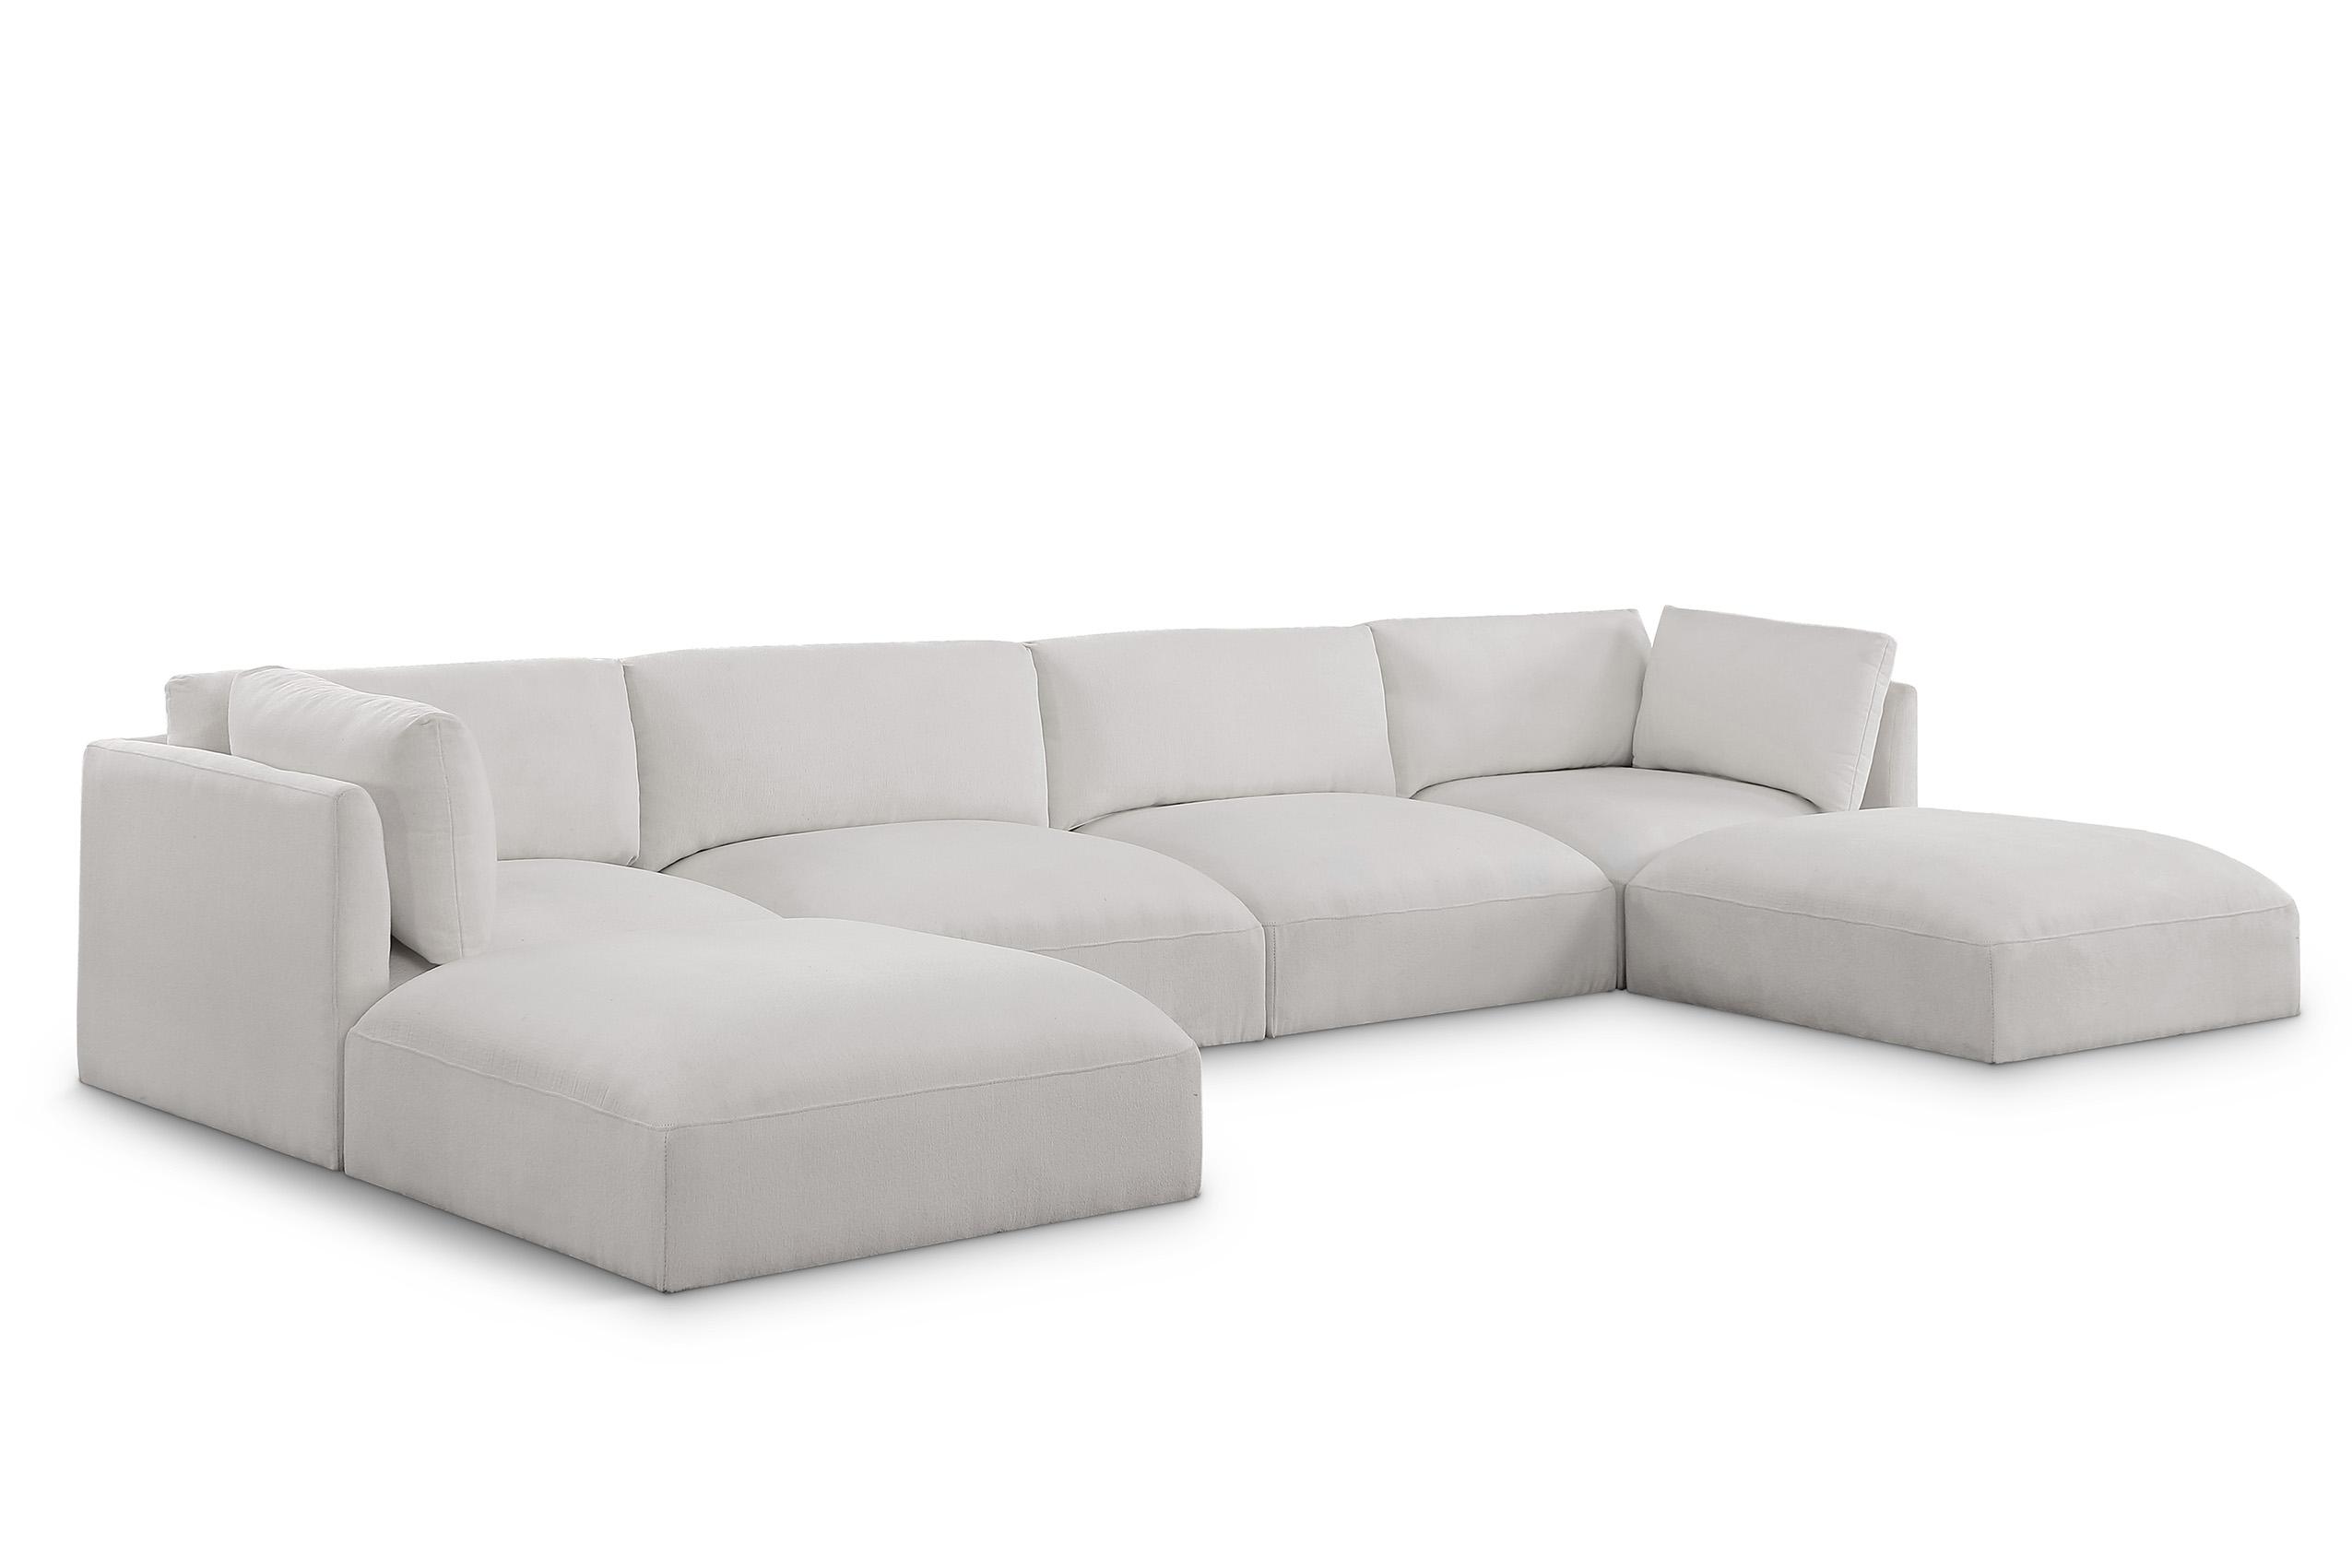 Contemporary, Modern Modular Sectional Sofa EASE 696Cream-Sec6C 696Cream-Sec6C in Cream Fabric